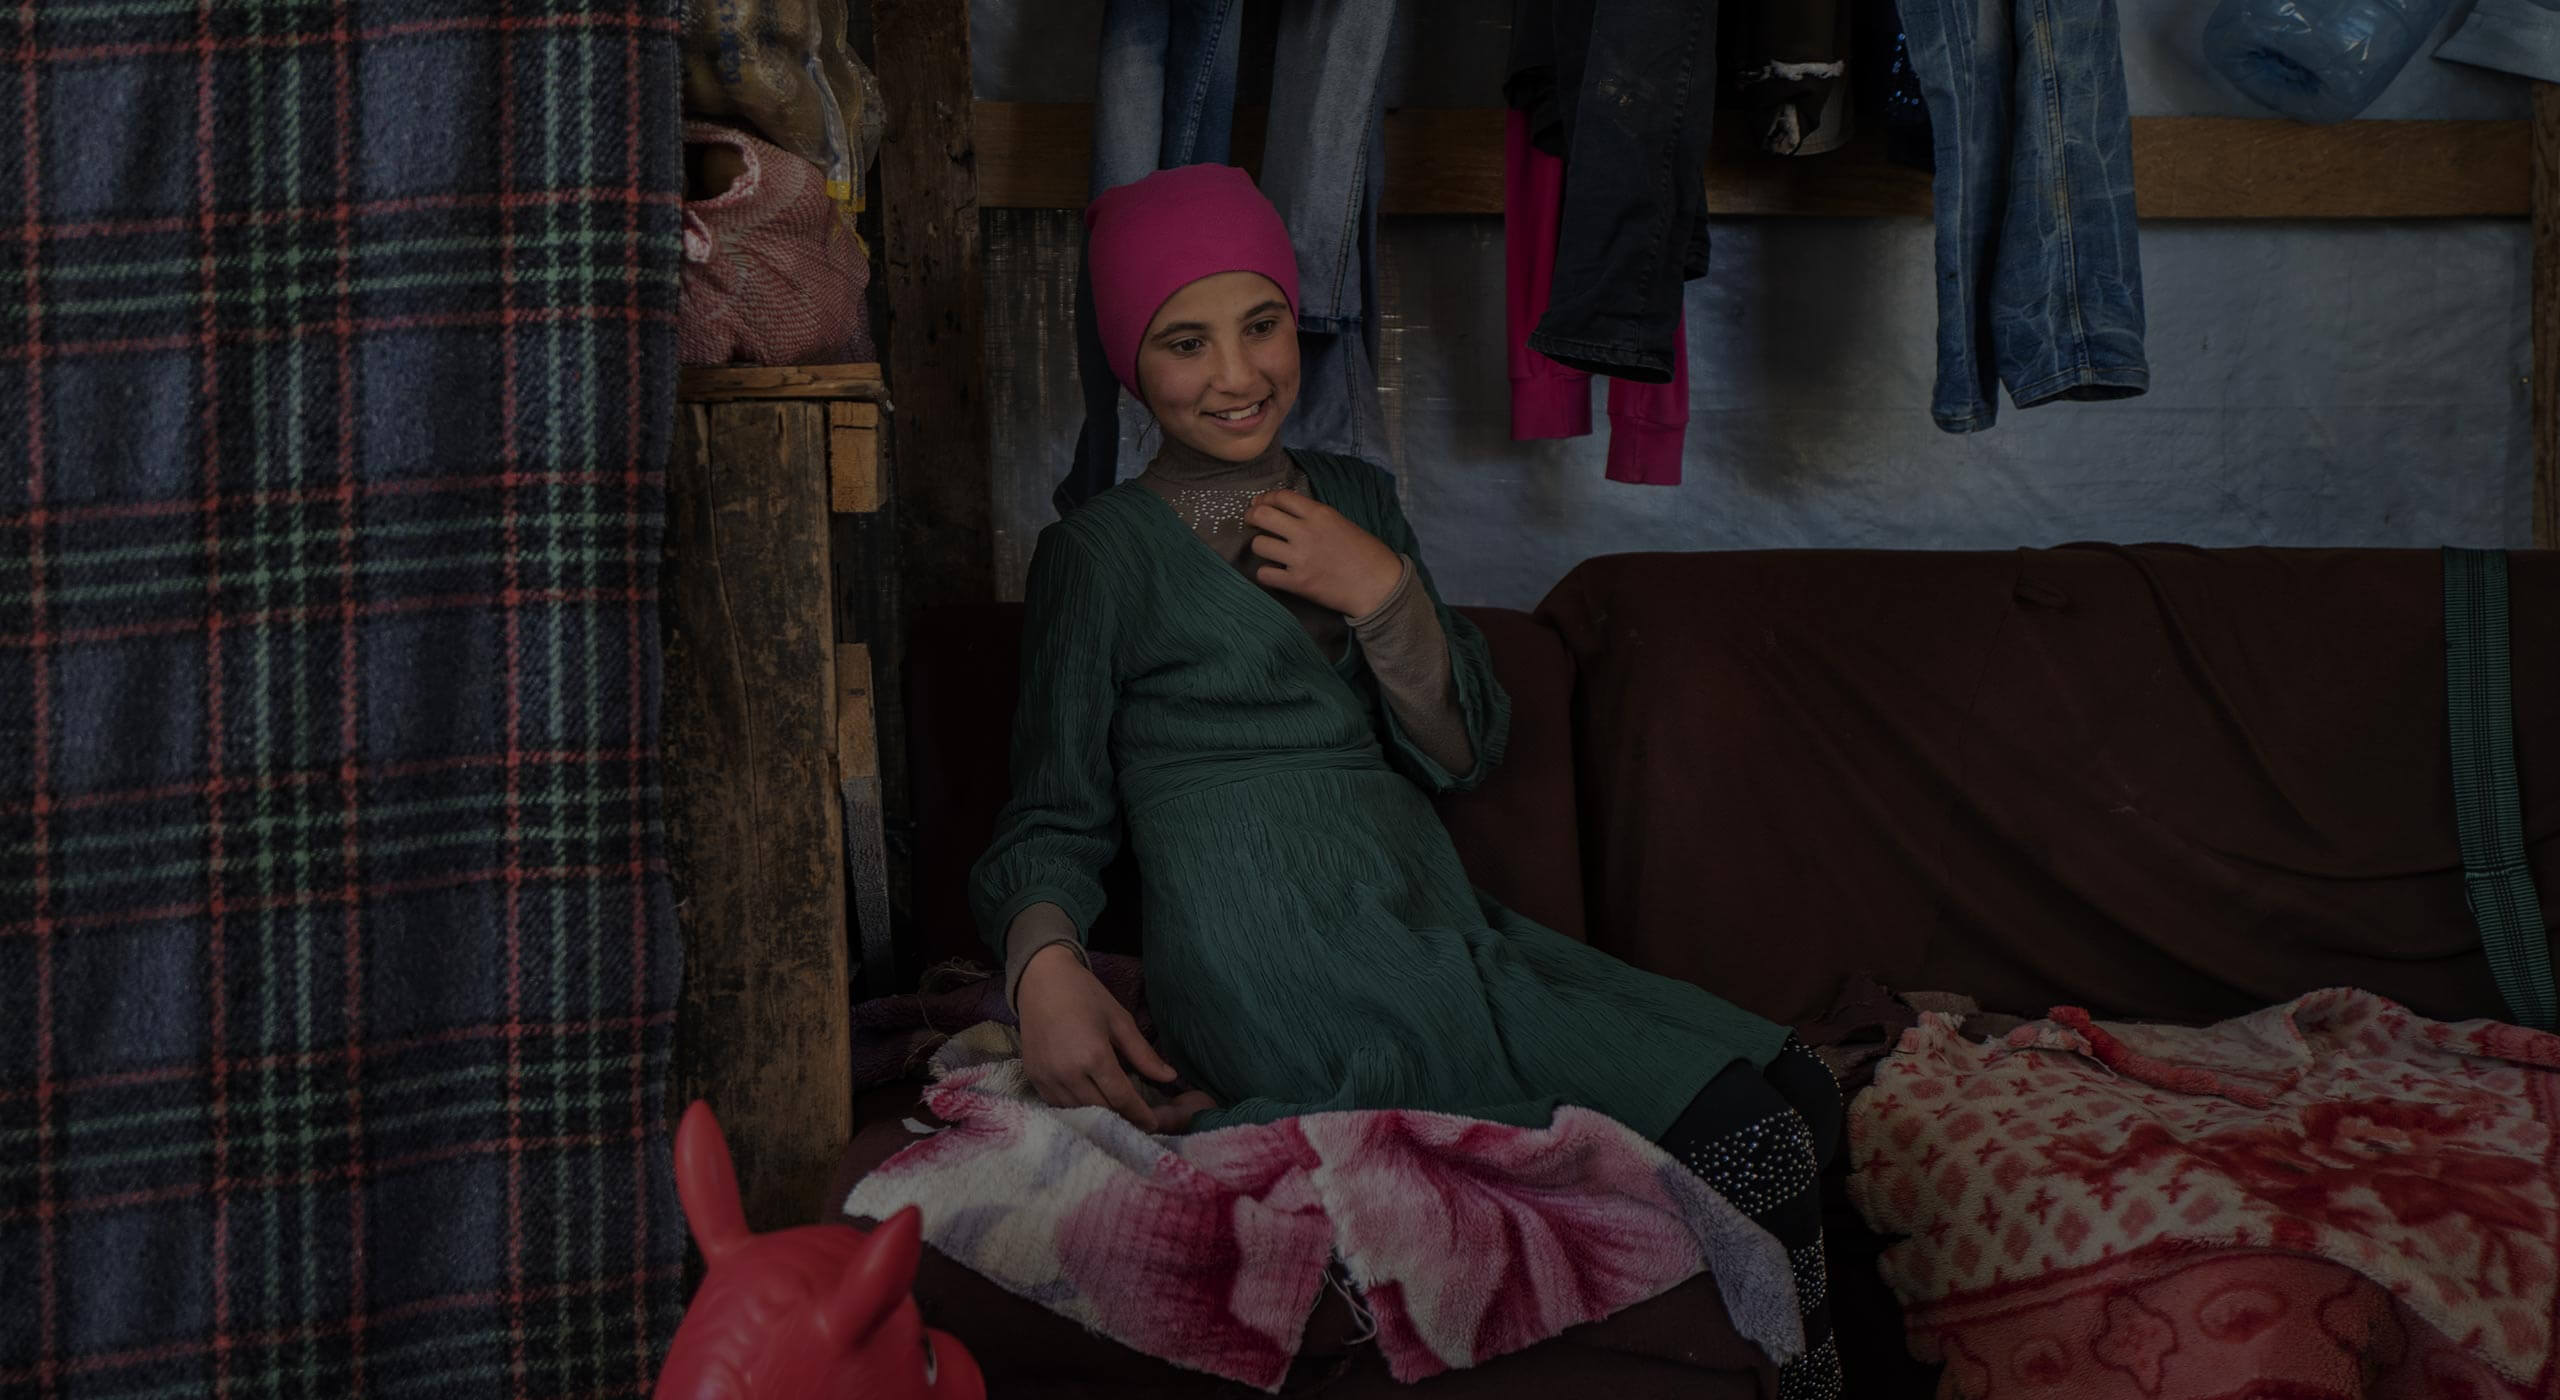 Überlebendes Mädchen des Syrien Krieges in ihrem zuhause, Fotoprojekt "Ich lebe"